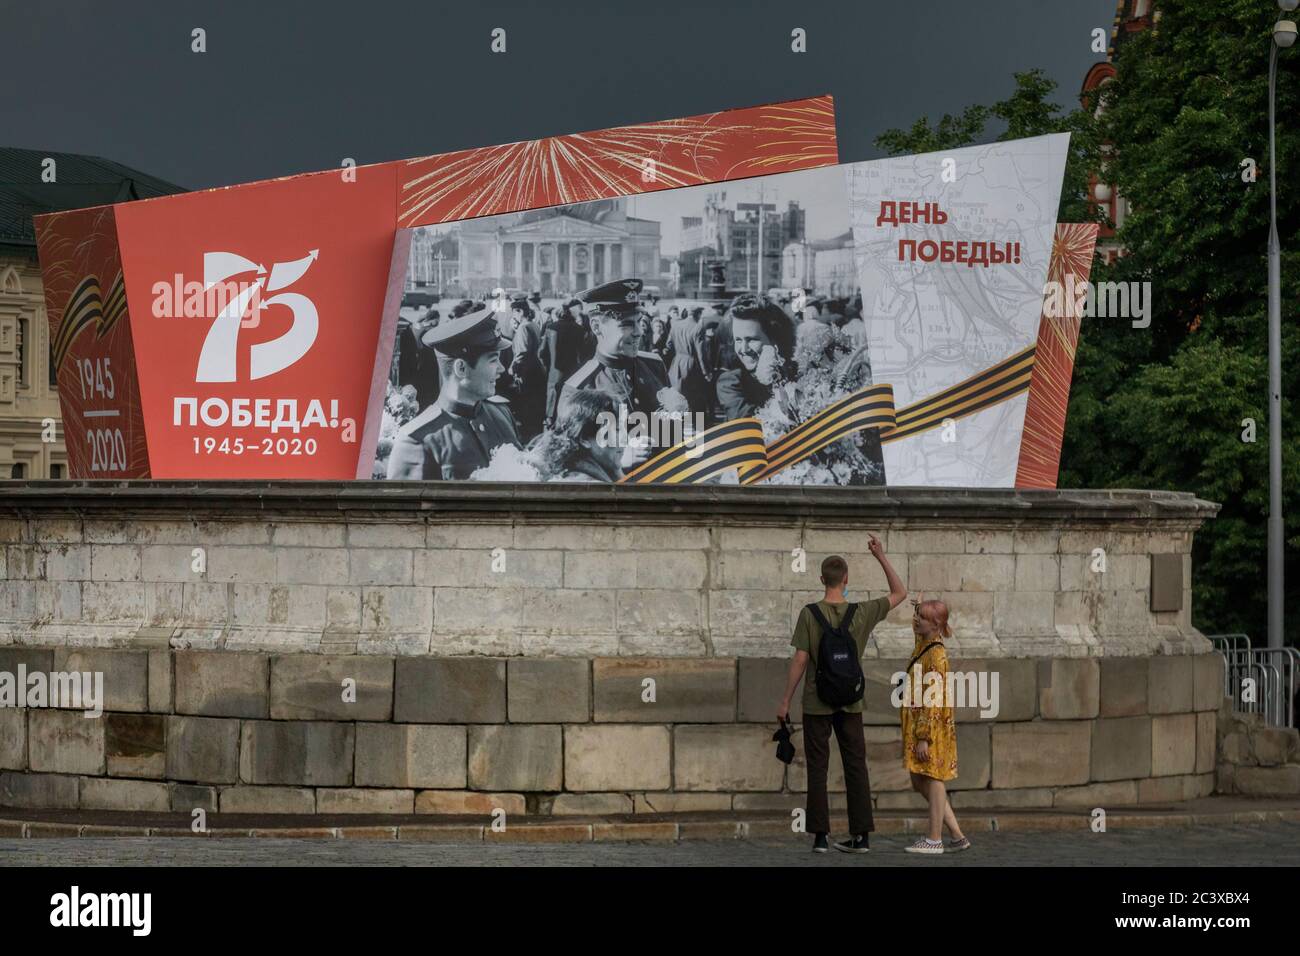 Moskau, Russland. 19. Juni 2020 DIE Dekoration des Roten Platzes im Zentrum Moskaus, die der Militärparade anlässlich des 75. Jahrestages des Sieges über Nazi-Deutschland im Großen Vaterländischen Krieg 1941-1945 gewidmet ist. Paraden des Siegestages in ganz Russland wurden vom 9. Mai auf den 24. Juni verschoben, da im Zusammenhang mit der Pandemie des neuartigen Coronavirus COVID-19 Beschränkungen auferlegt wurden Stockfoto